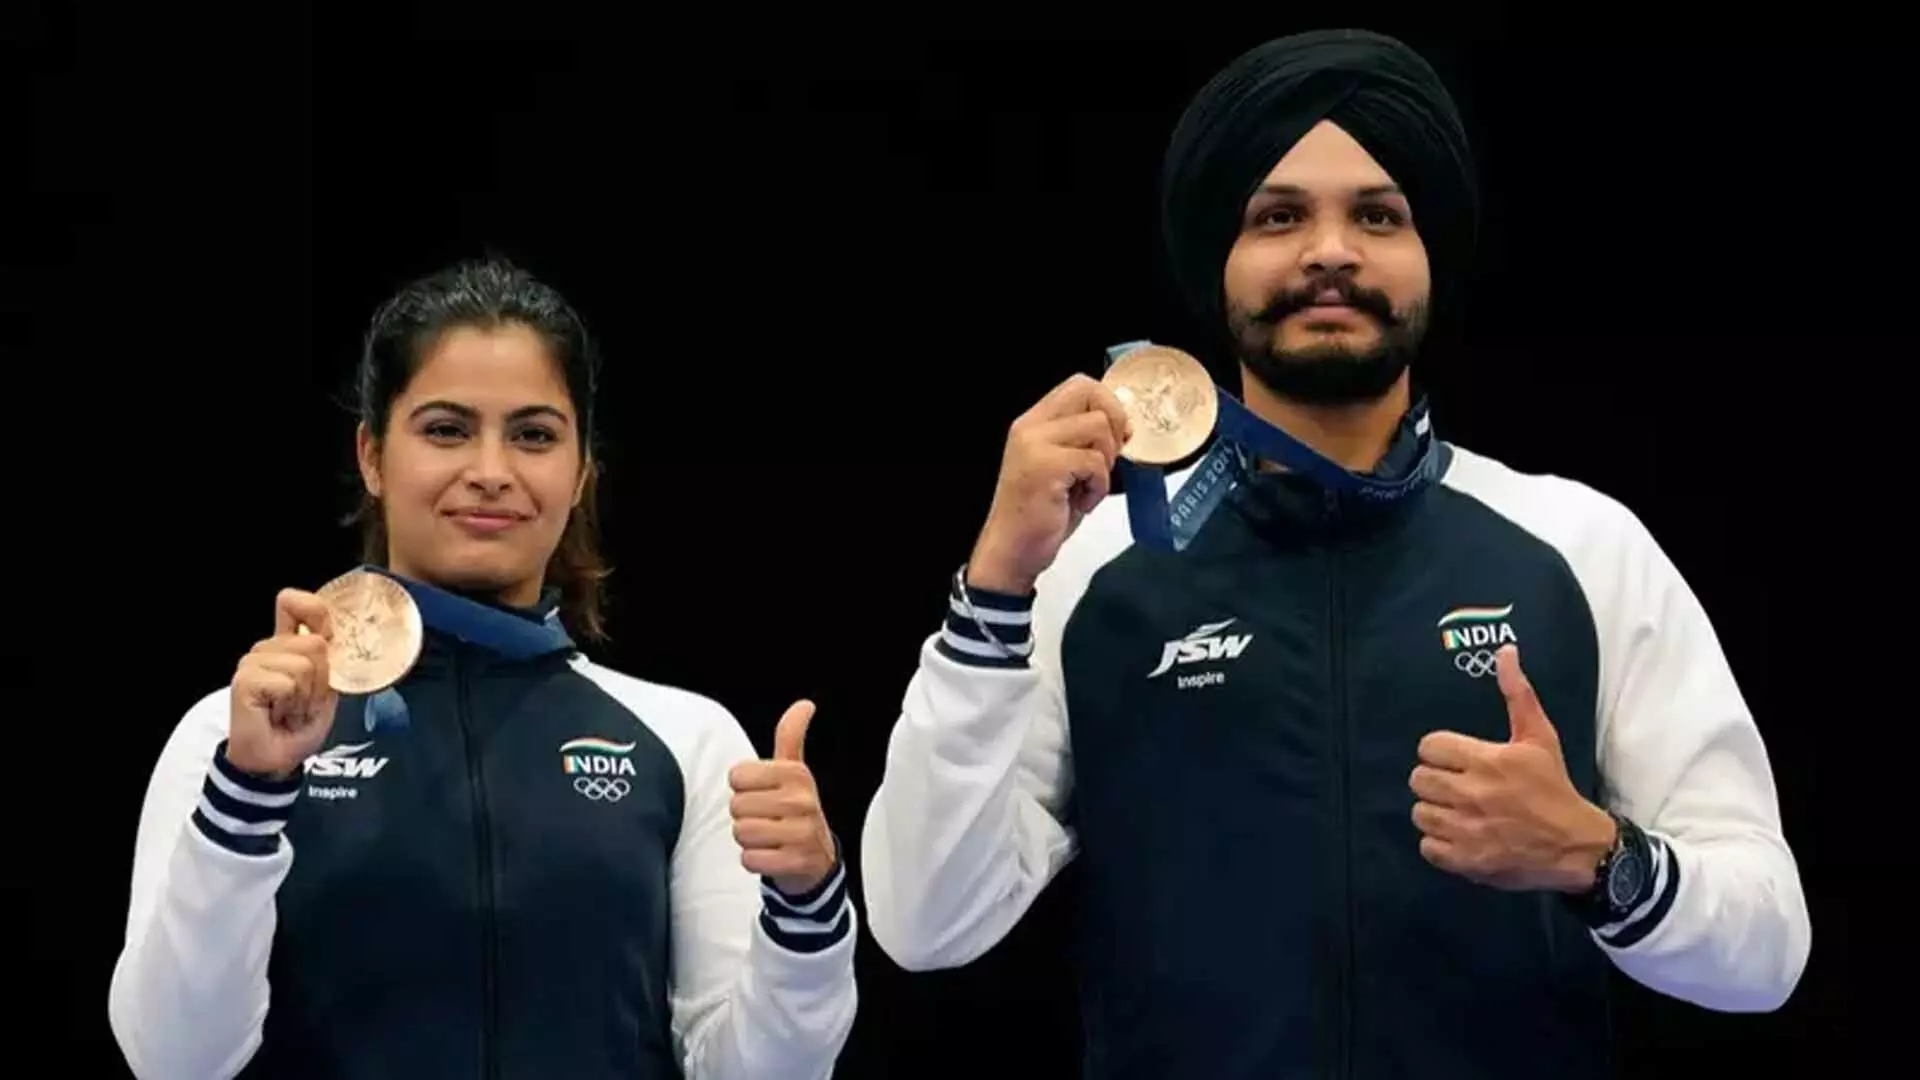 पदक की भूख मिटाने के बाद भारत के Olympic हीरो को डोसा खाने की तलब